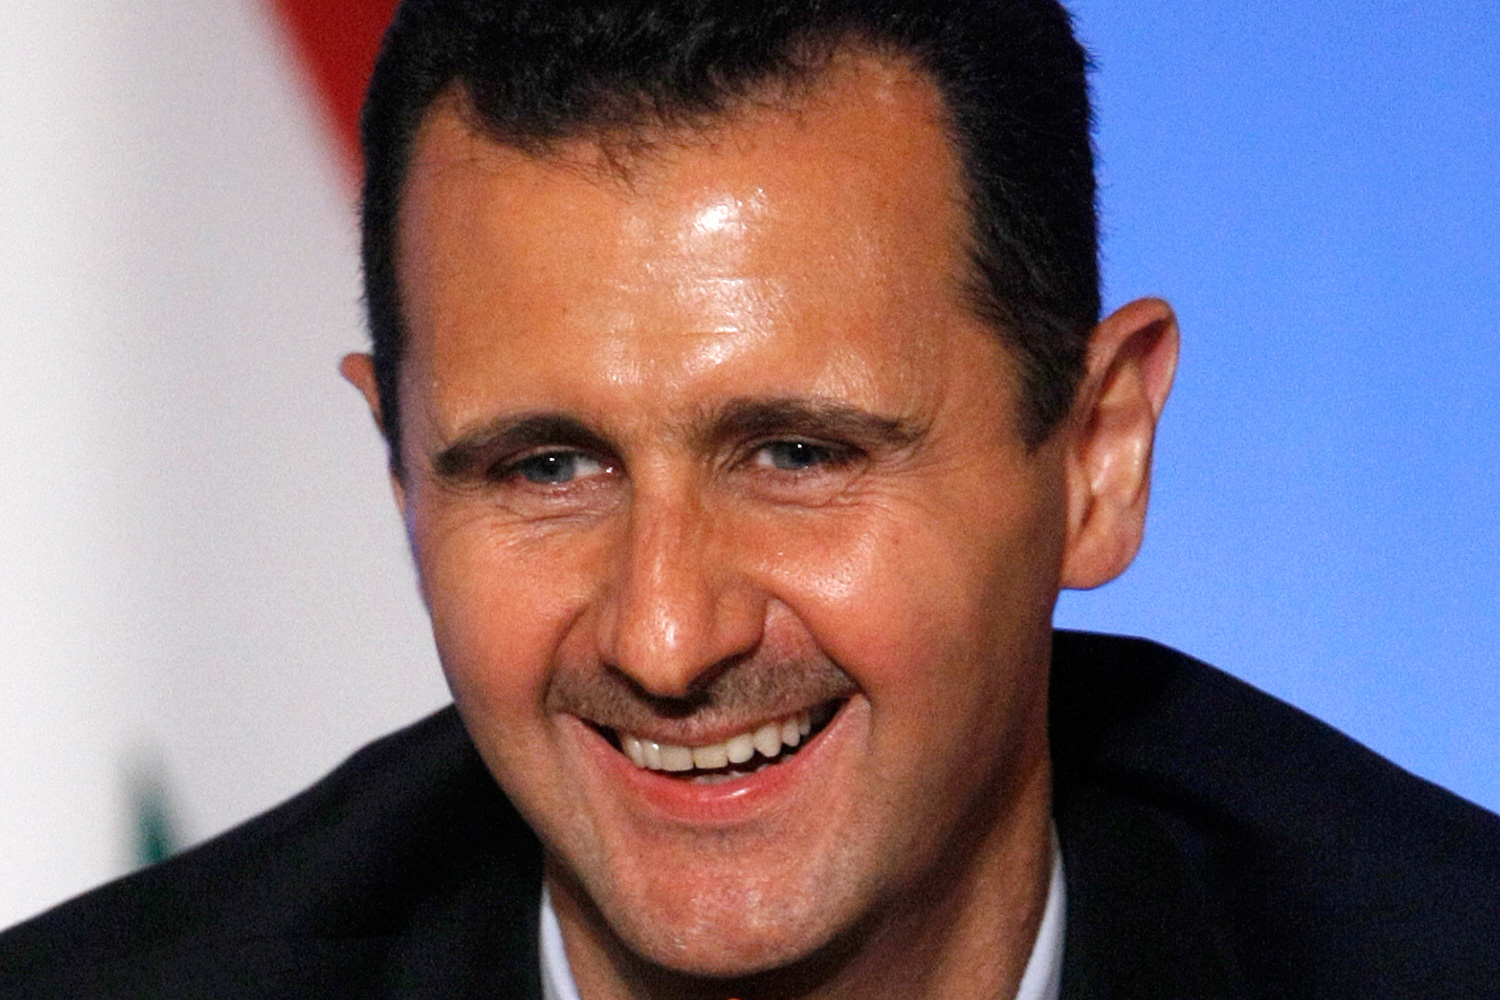 El presidente Assad se ríe y dice que duerme bien cuando un periodista le pregunta por todos los niños muertos en Siria